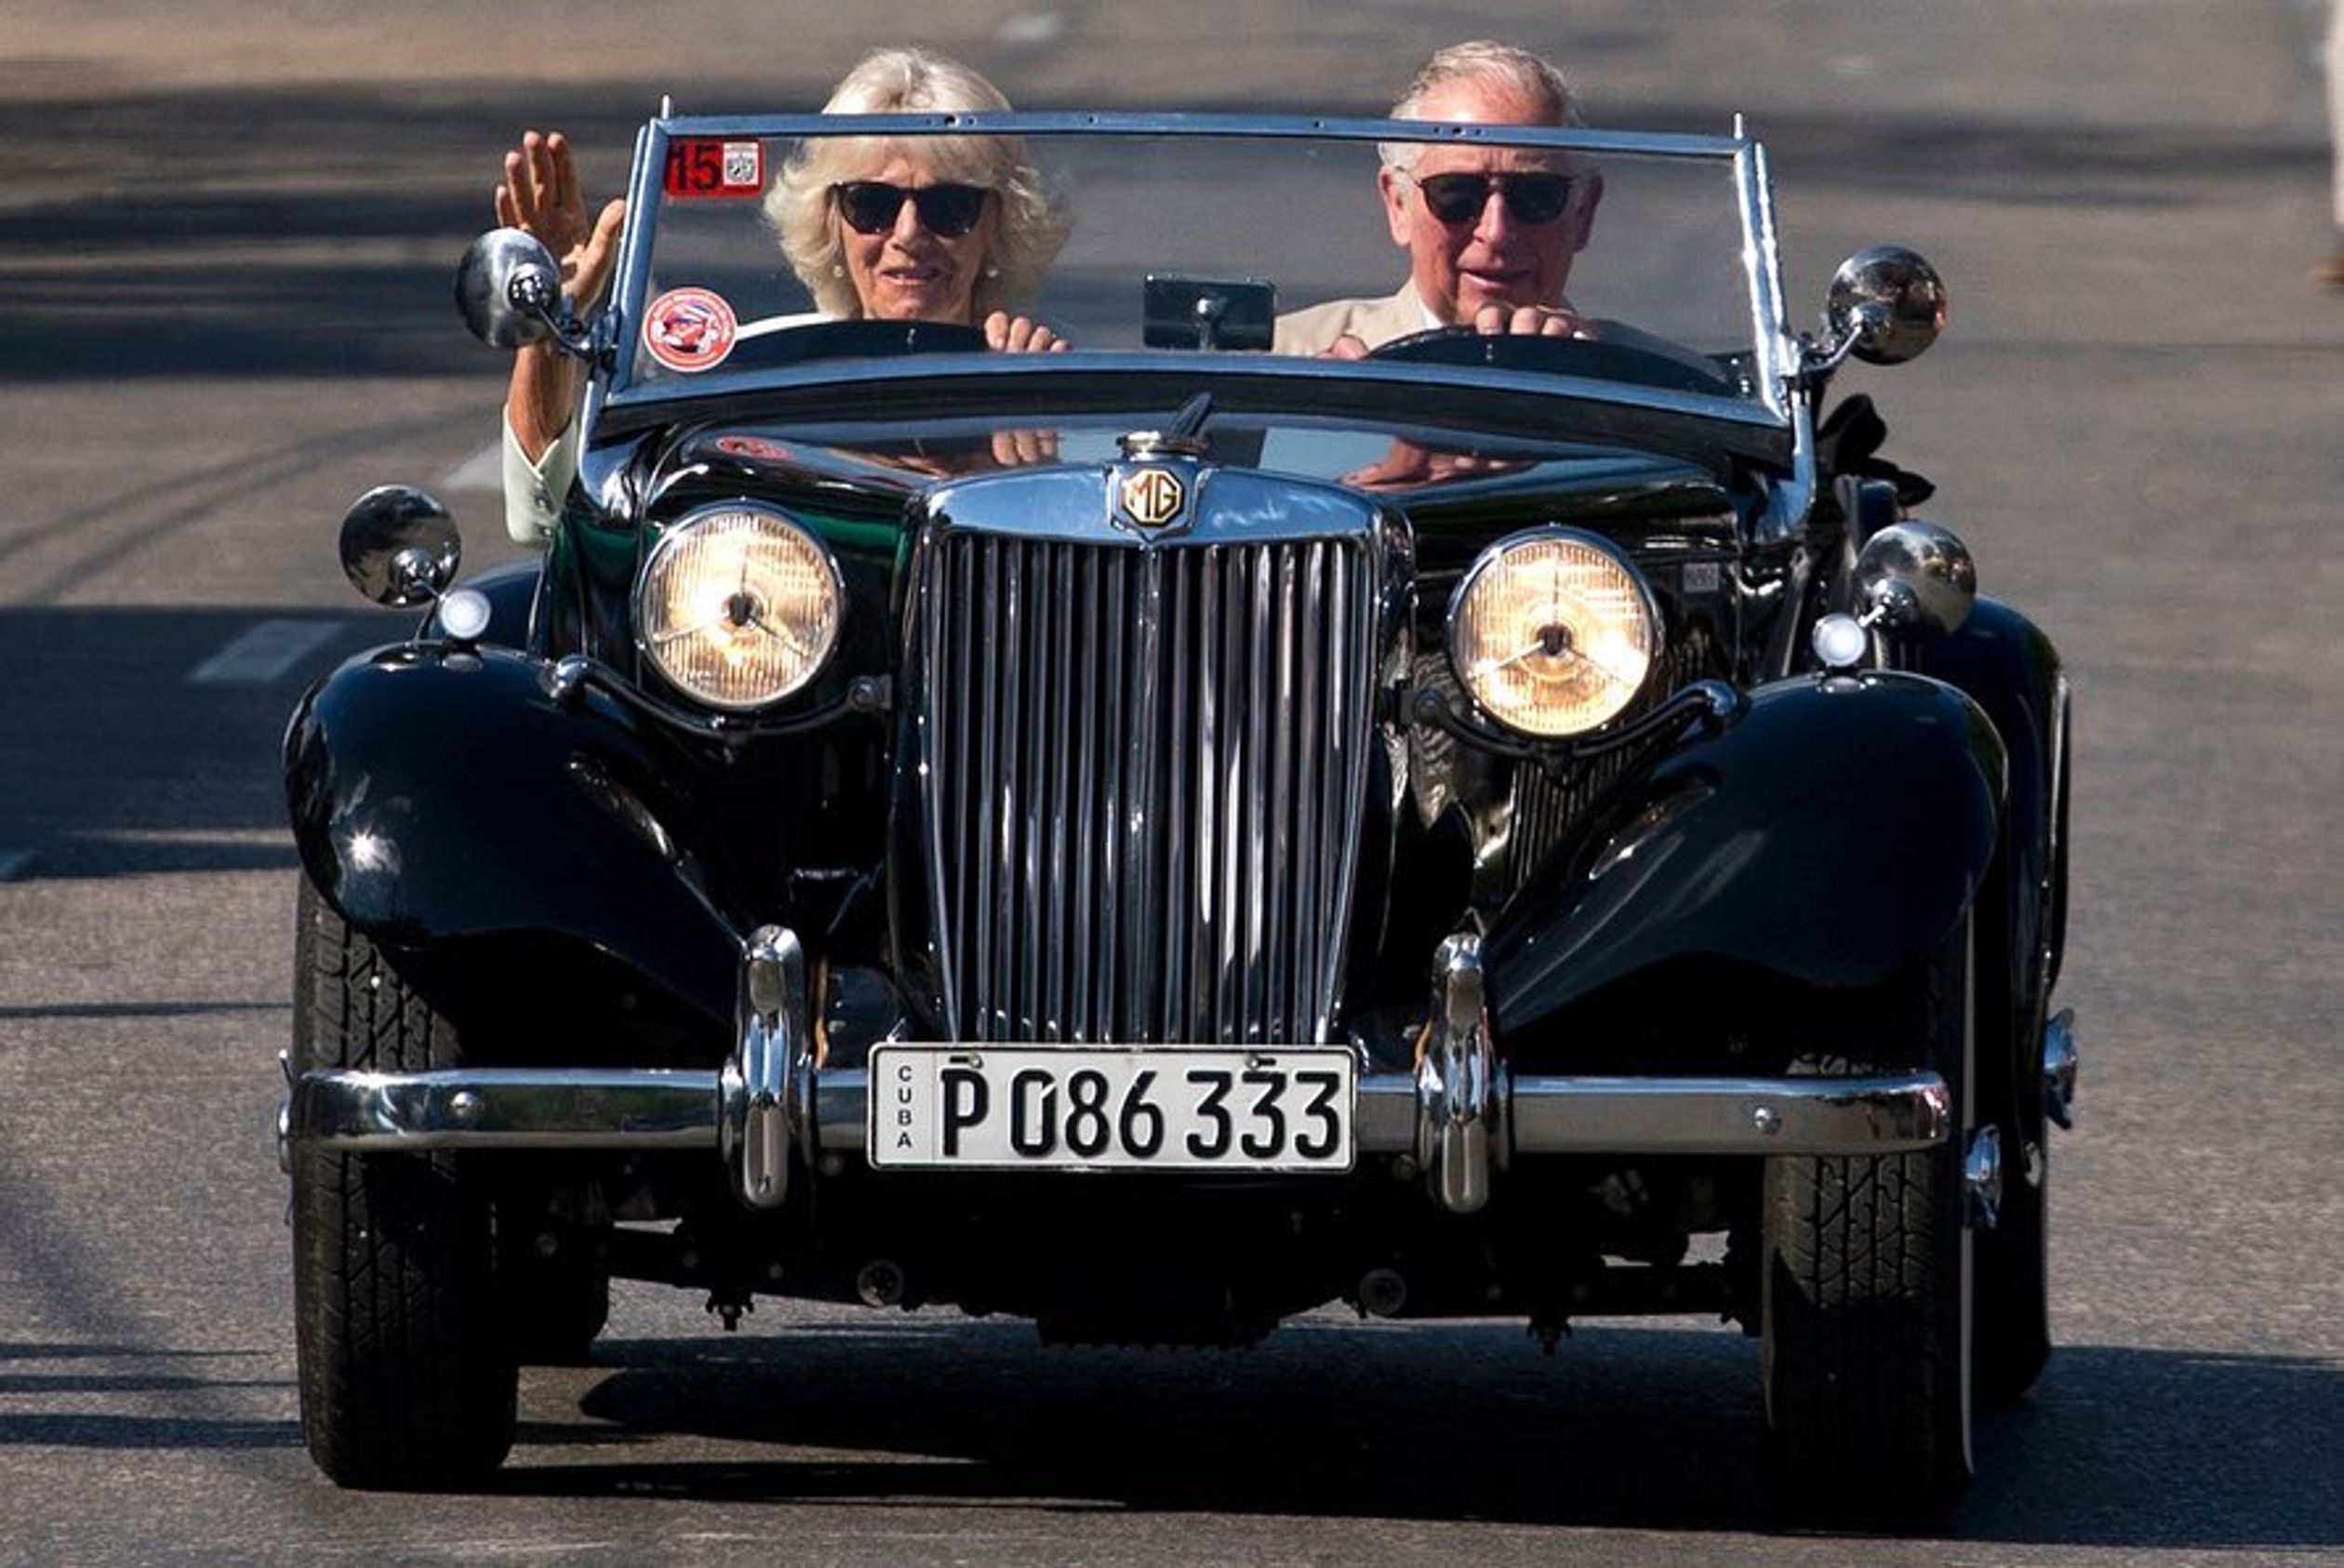 Charles en Camilla bezochten in 2019 het eiland Cuba en reden daar rond in deze cabrio. Deze foto